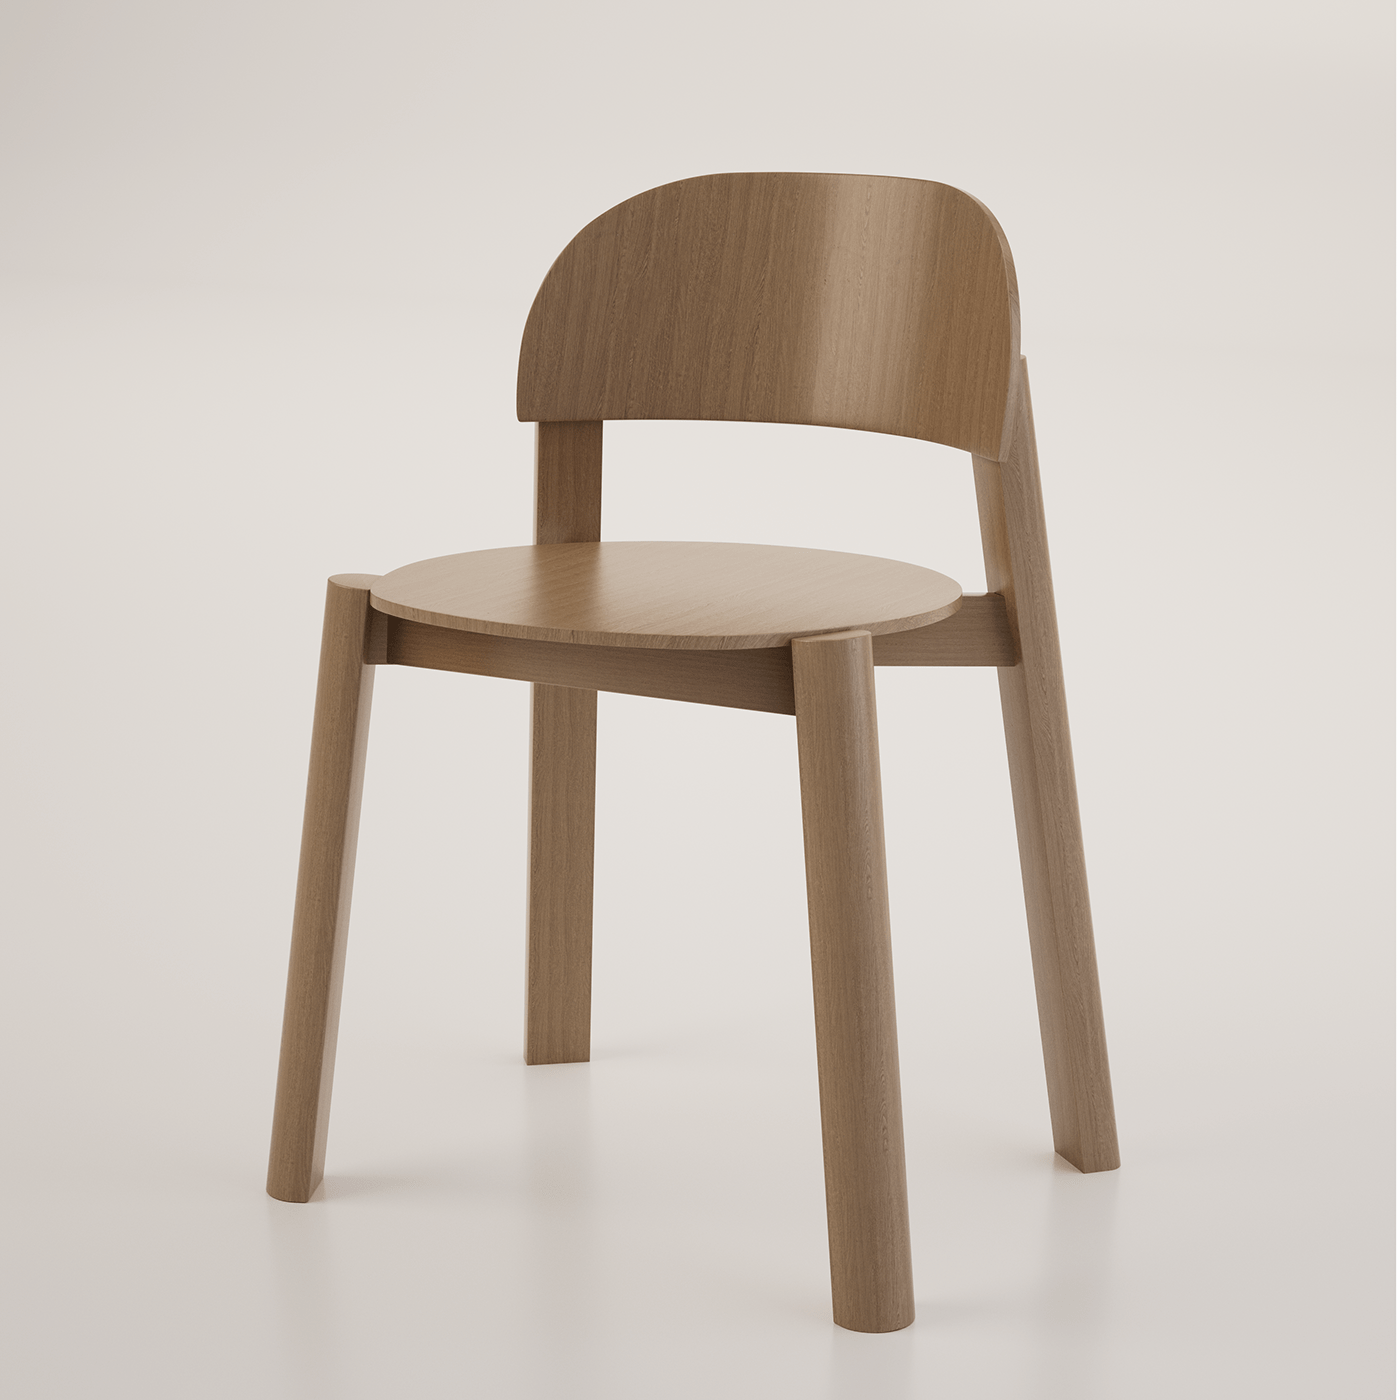 blender octane firniture chair wood 3D Render interior design  3ds max corona